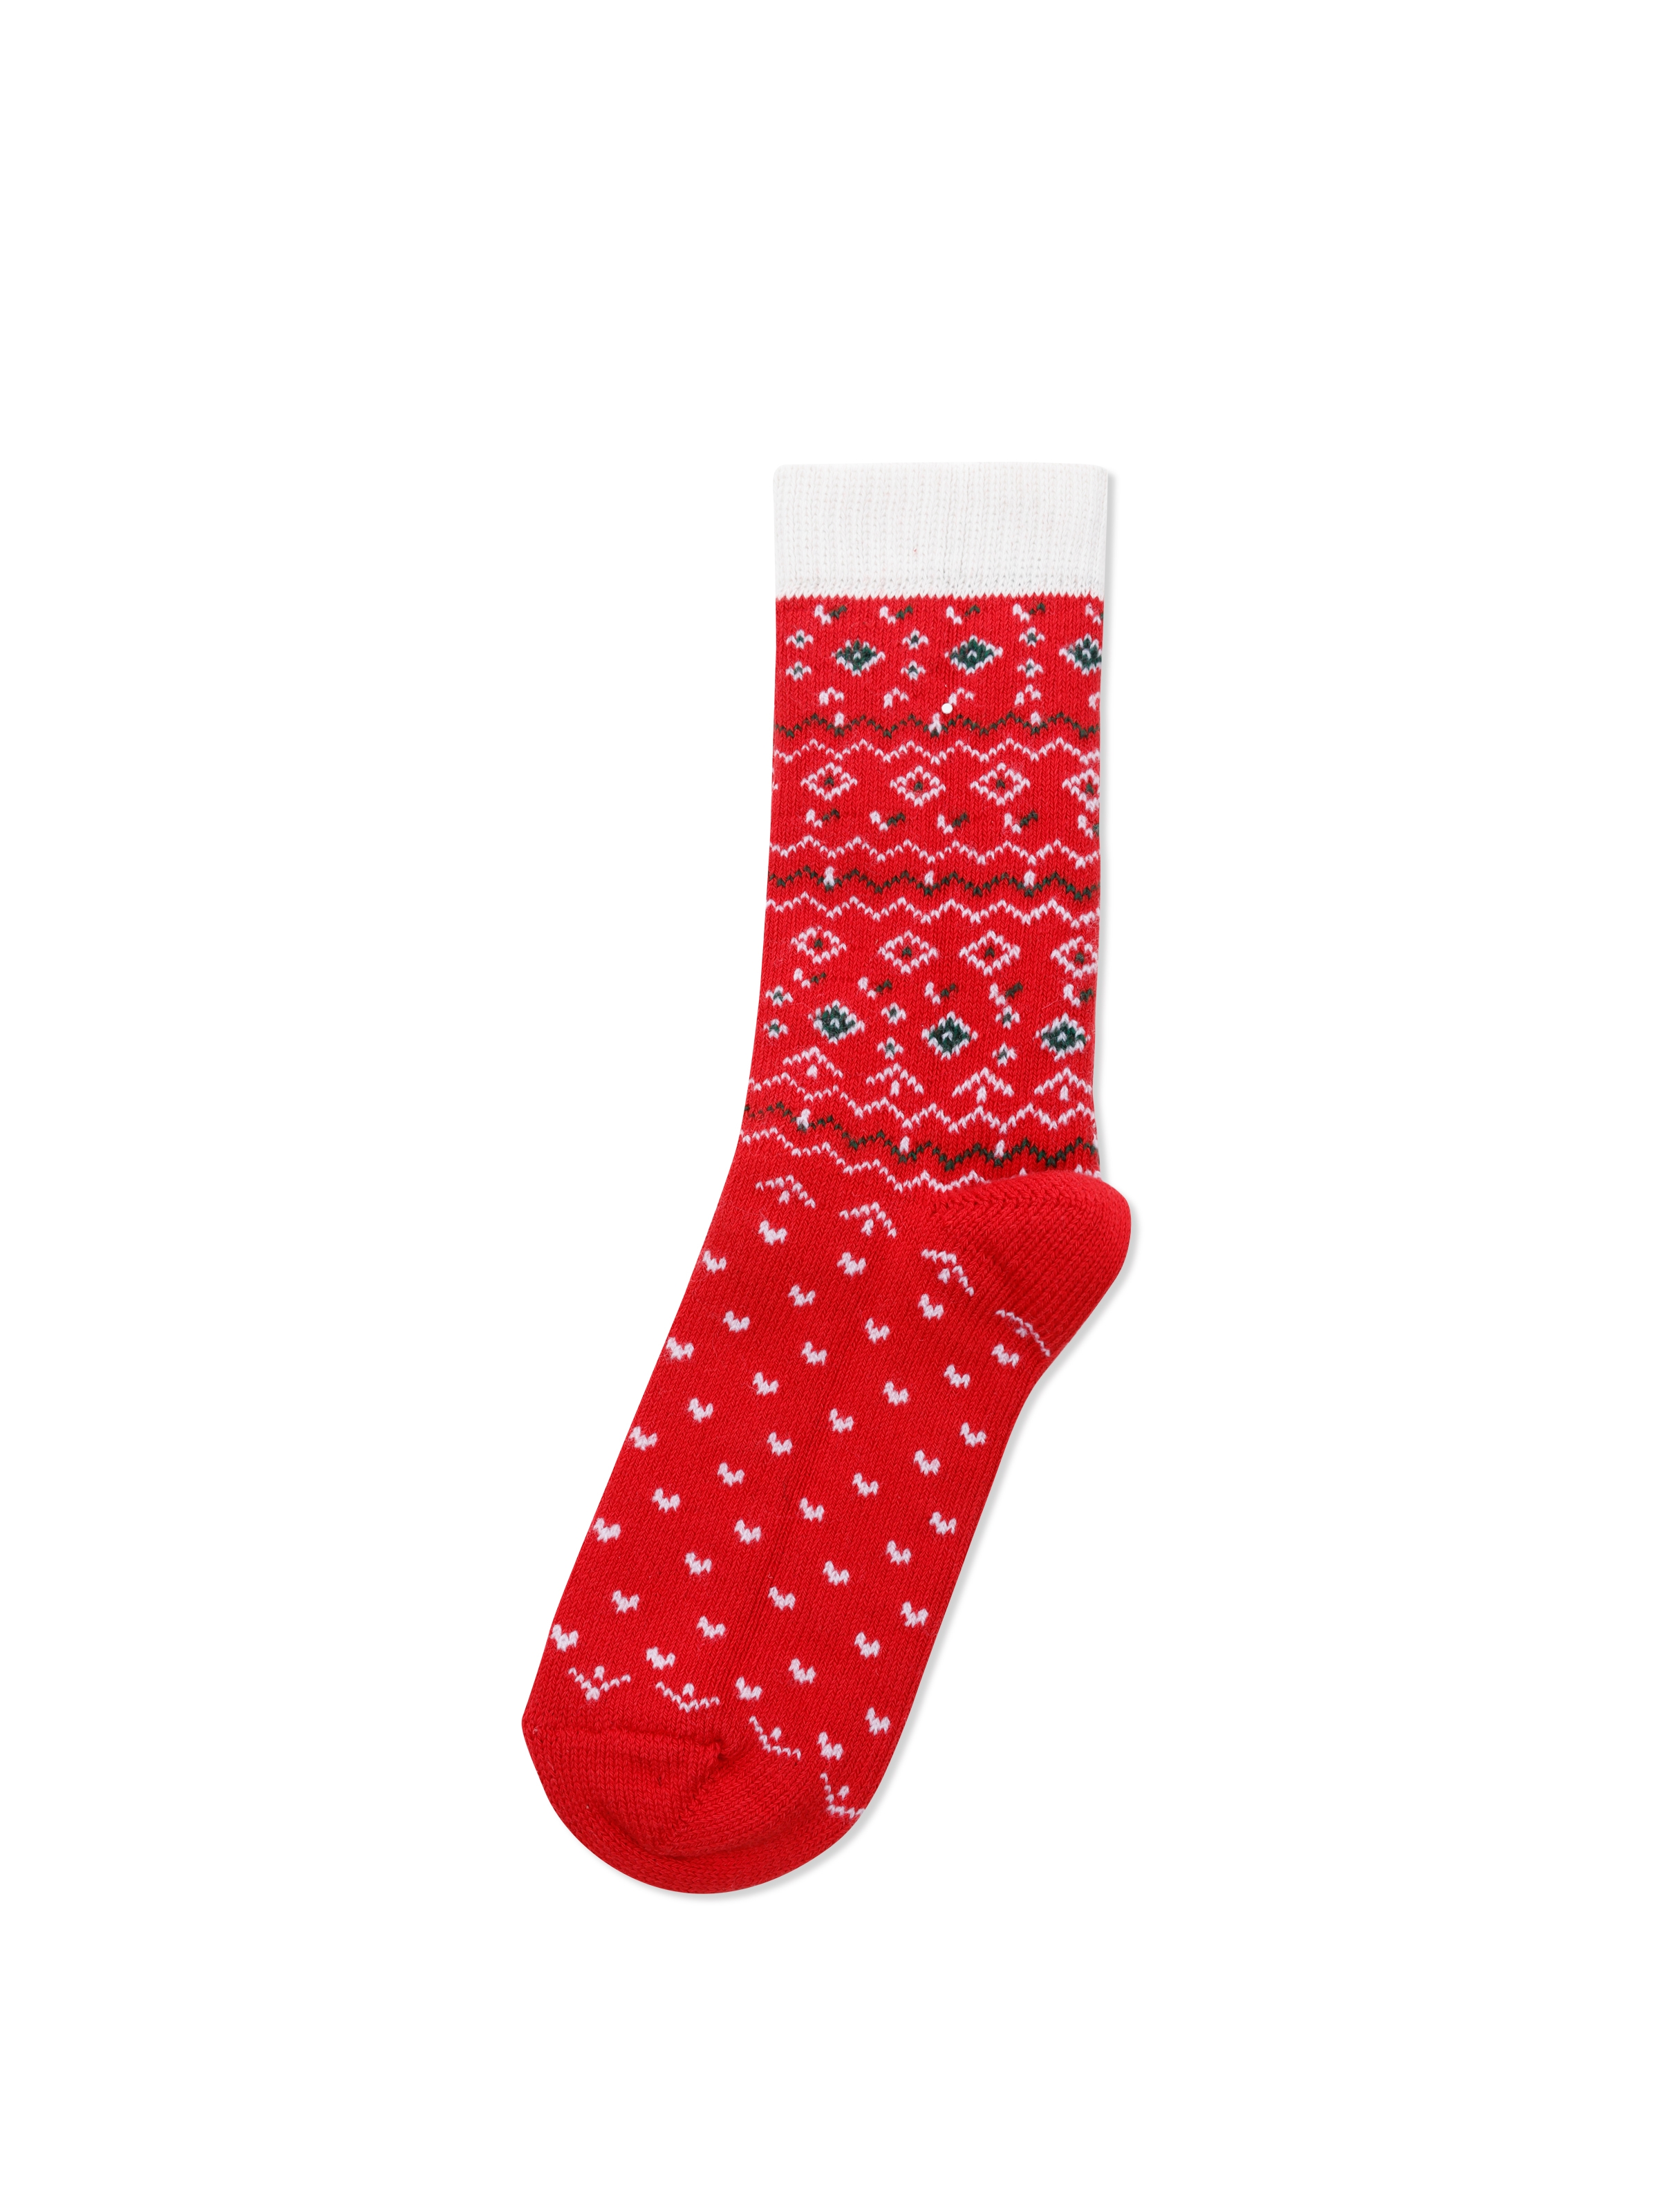 Показати інформацію про  Шкарпетки Жіночі Червоні  